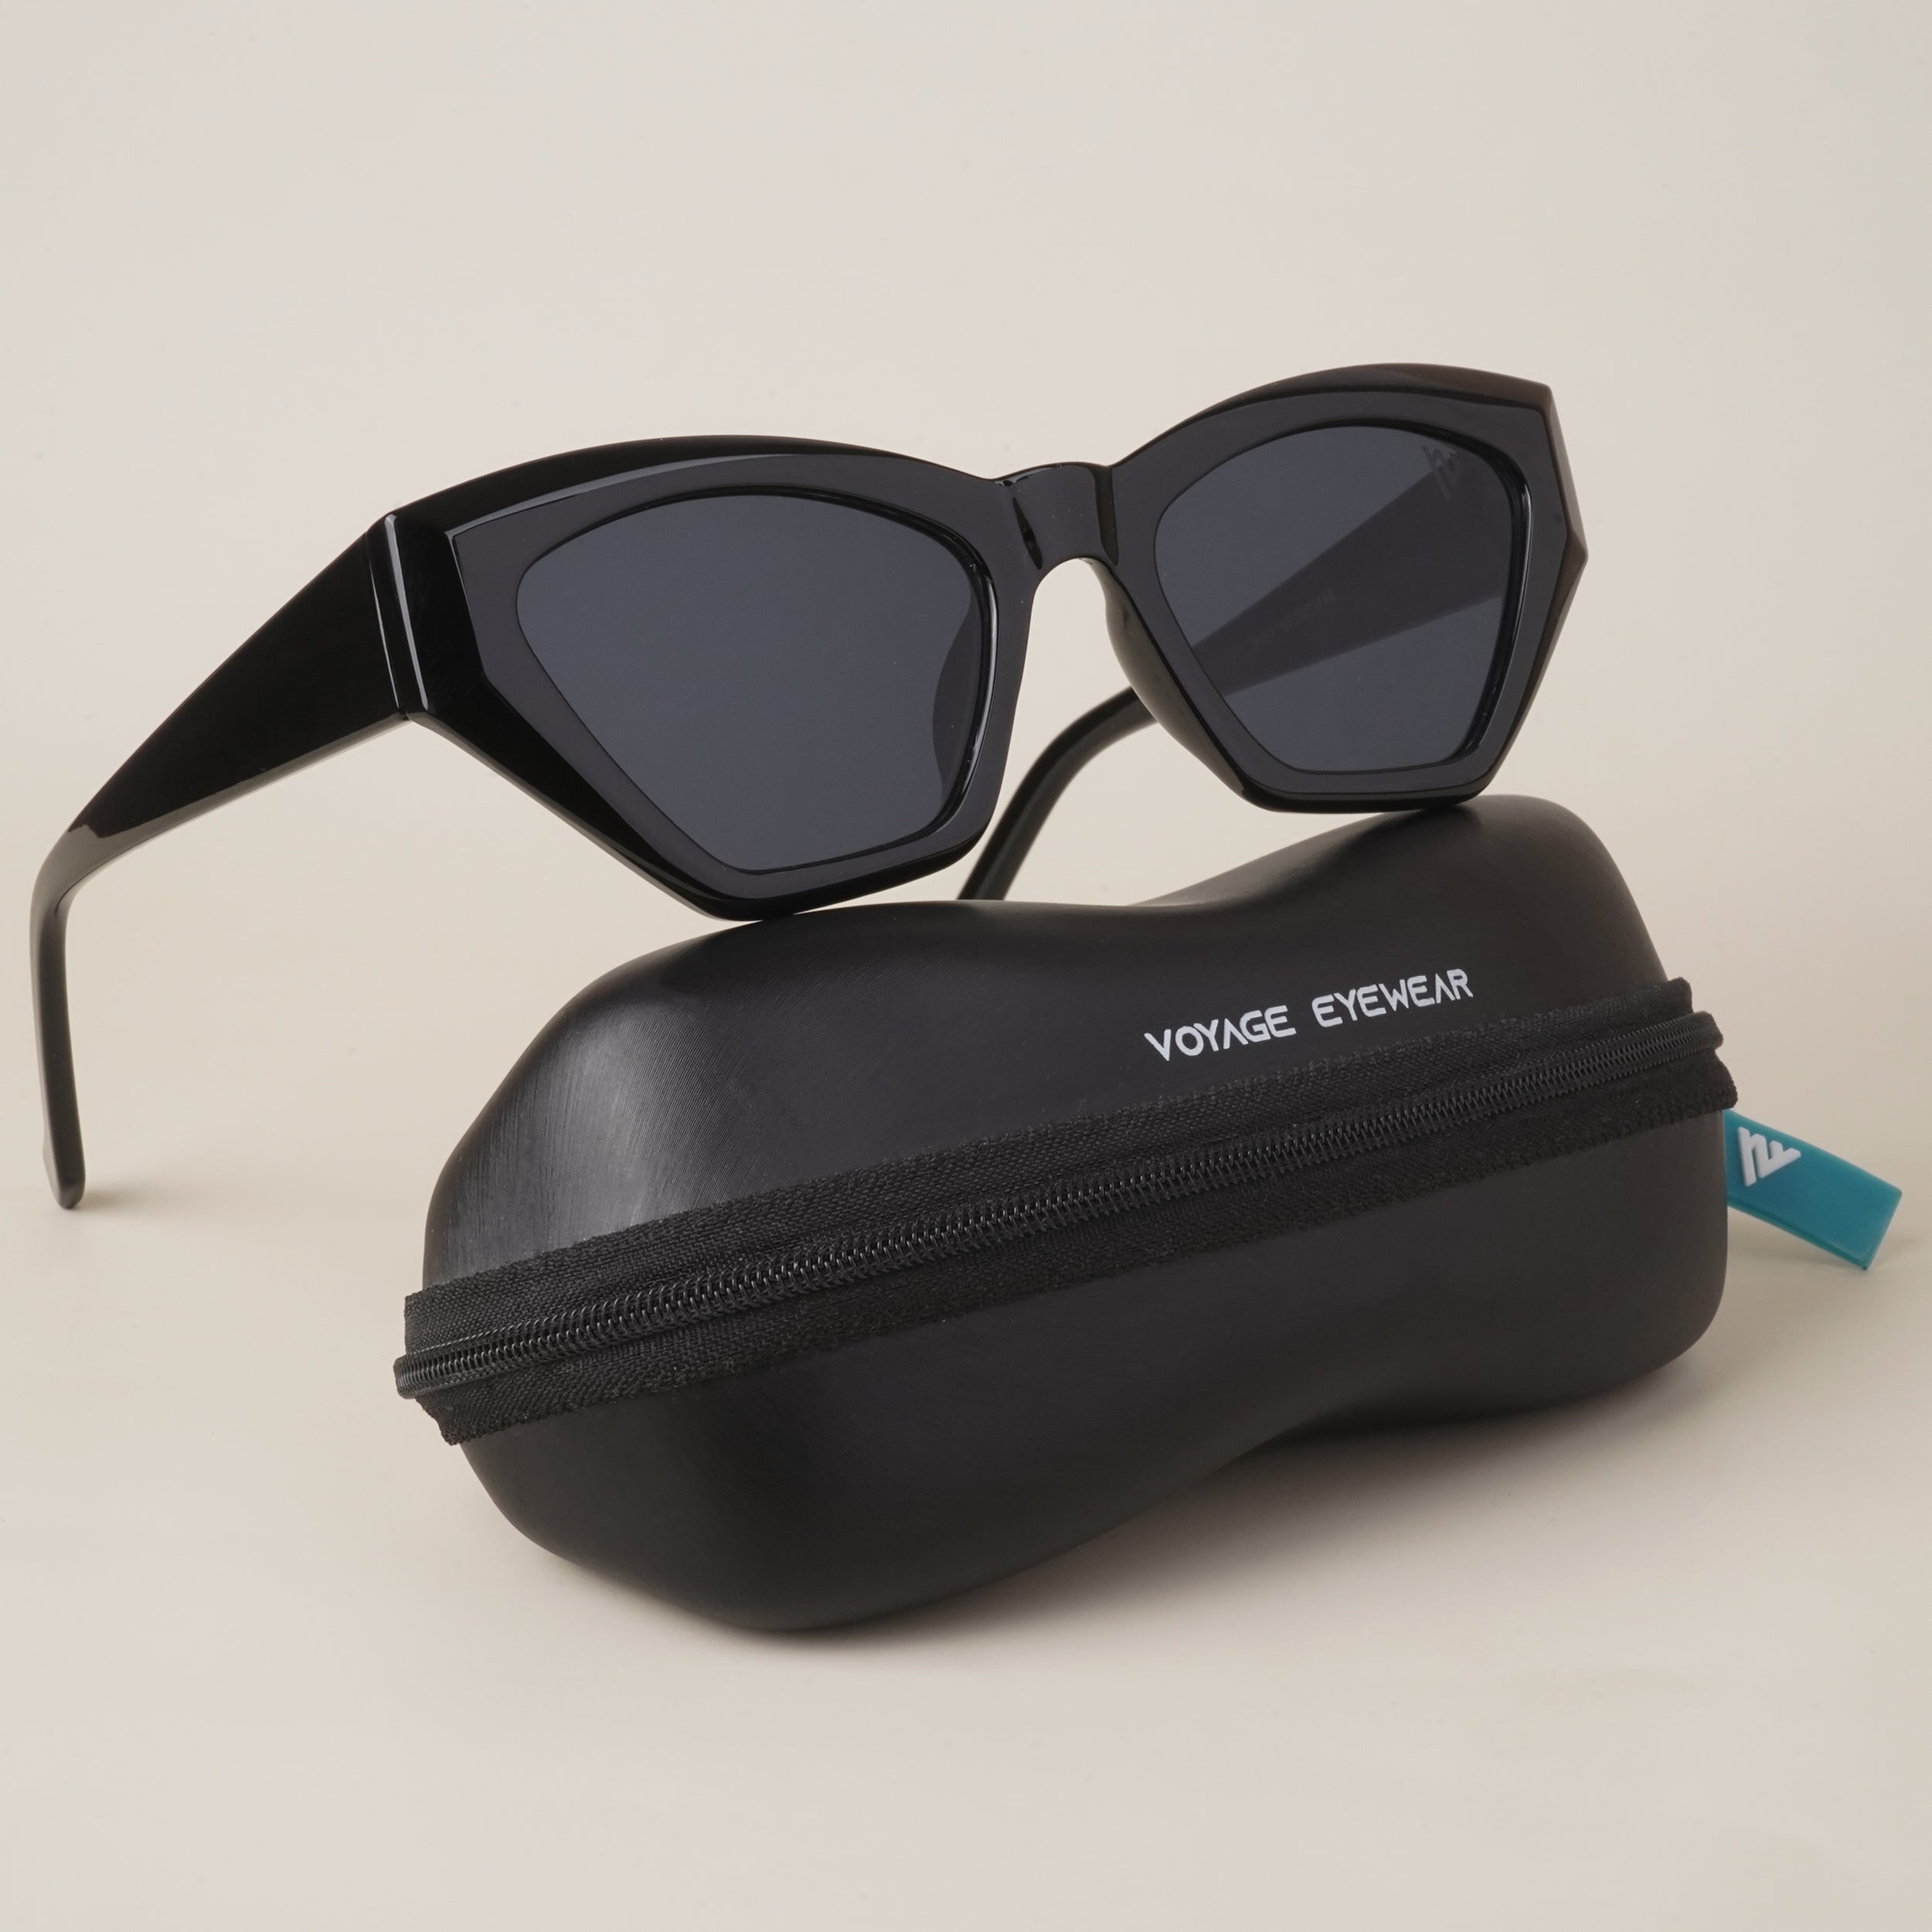 Voyage Black Diamond Cut Cateye Sunglasses MG3638